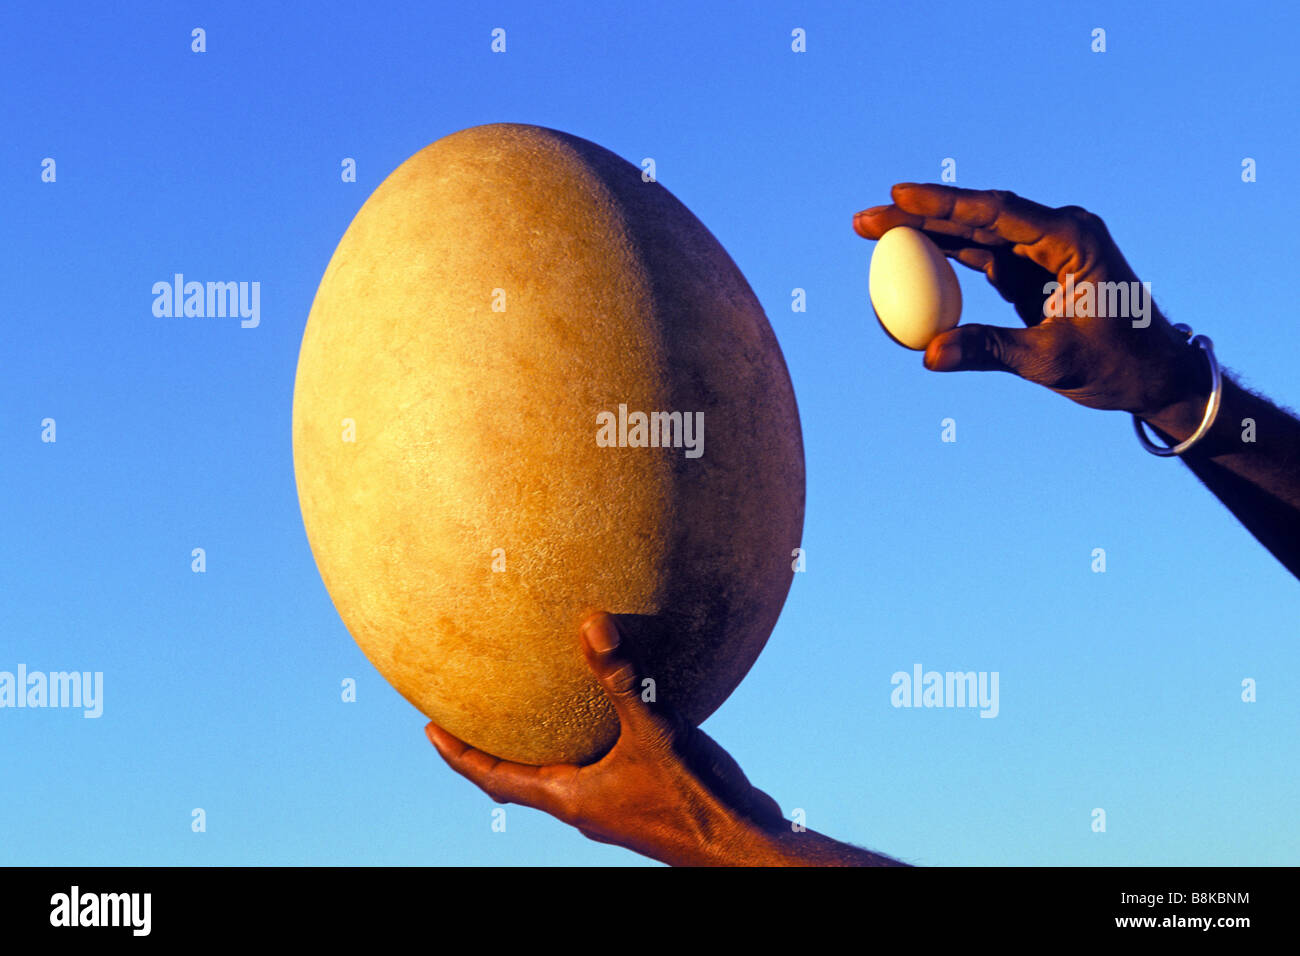 Huevo de ave elefante (Aepyornis maximus) en comparación con el huevo de pollo Foto de stock